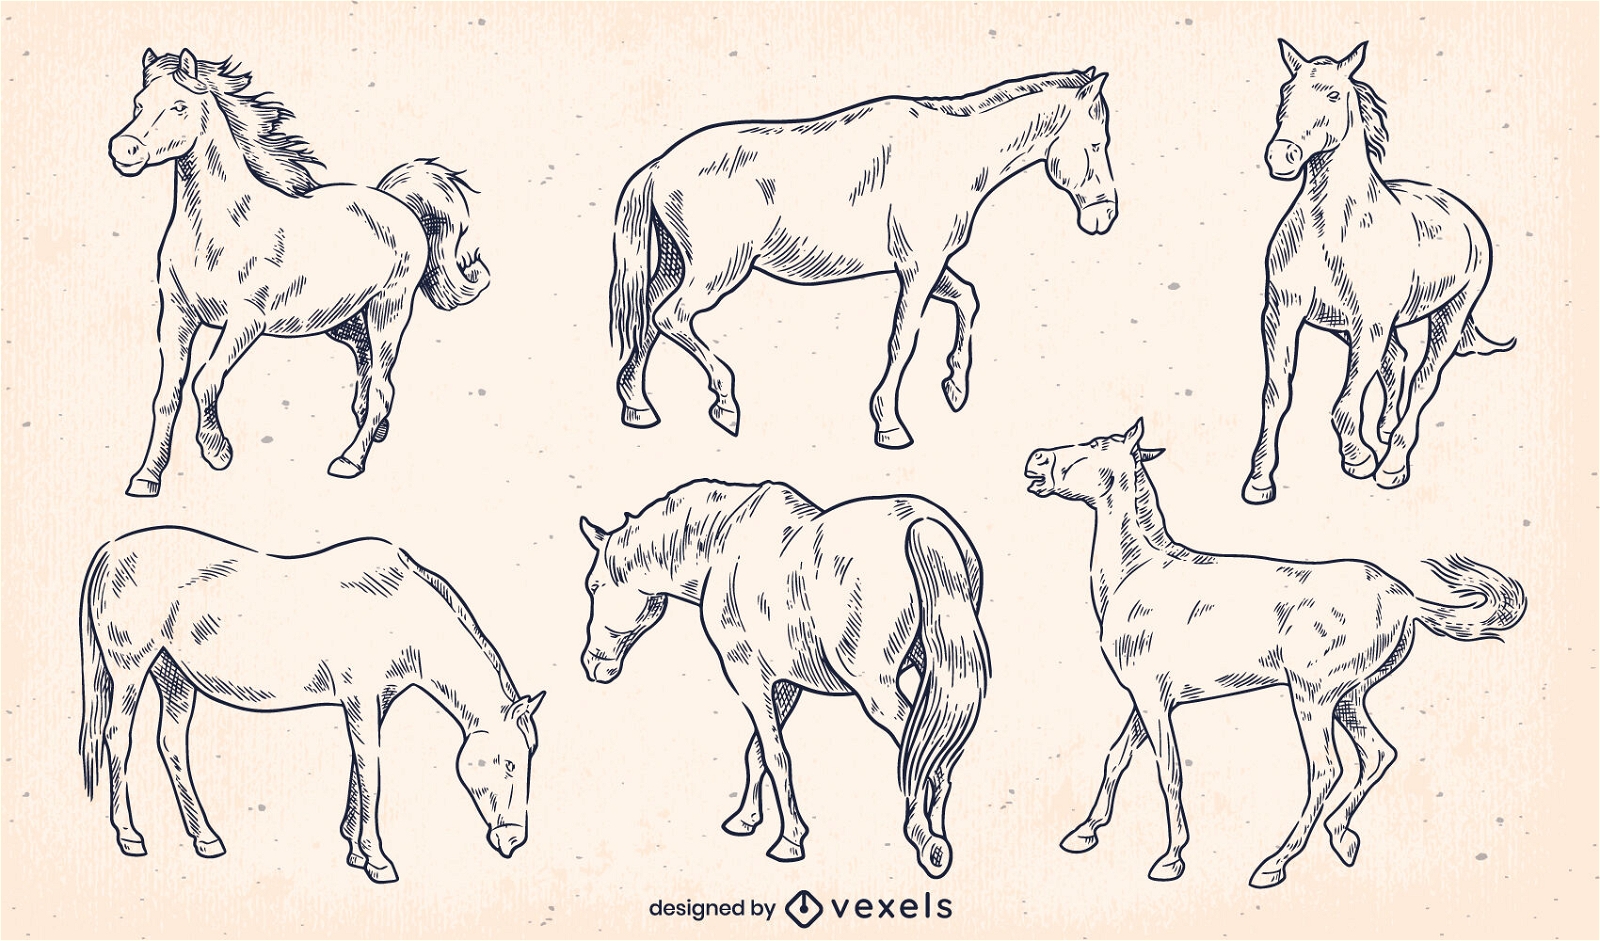 cenografia de cavalo desenhada de mão